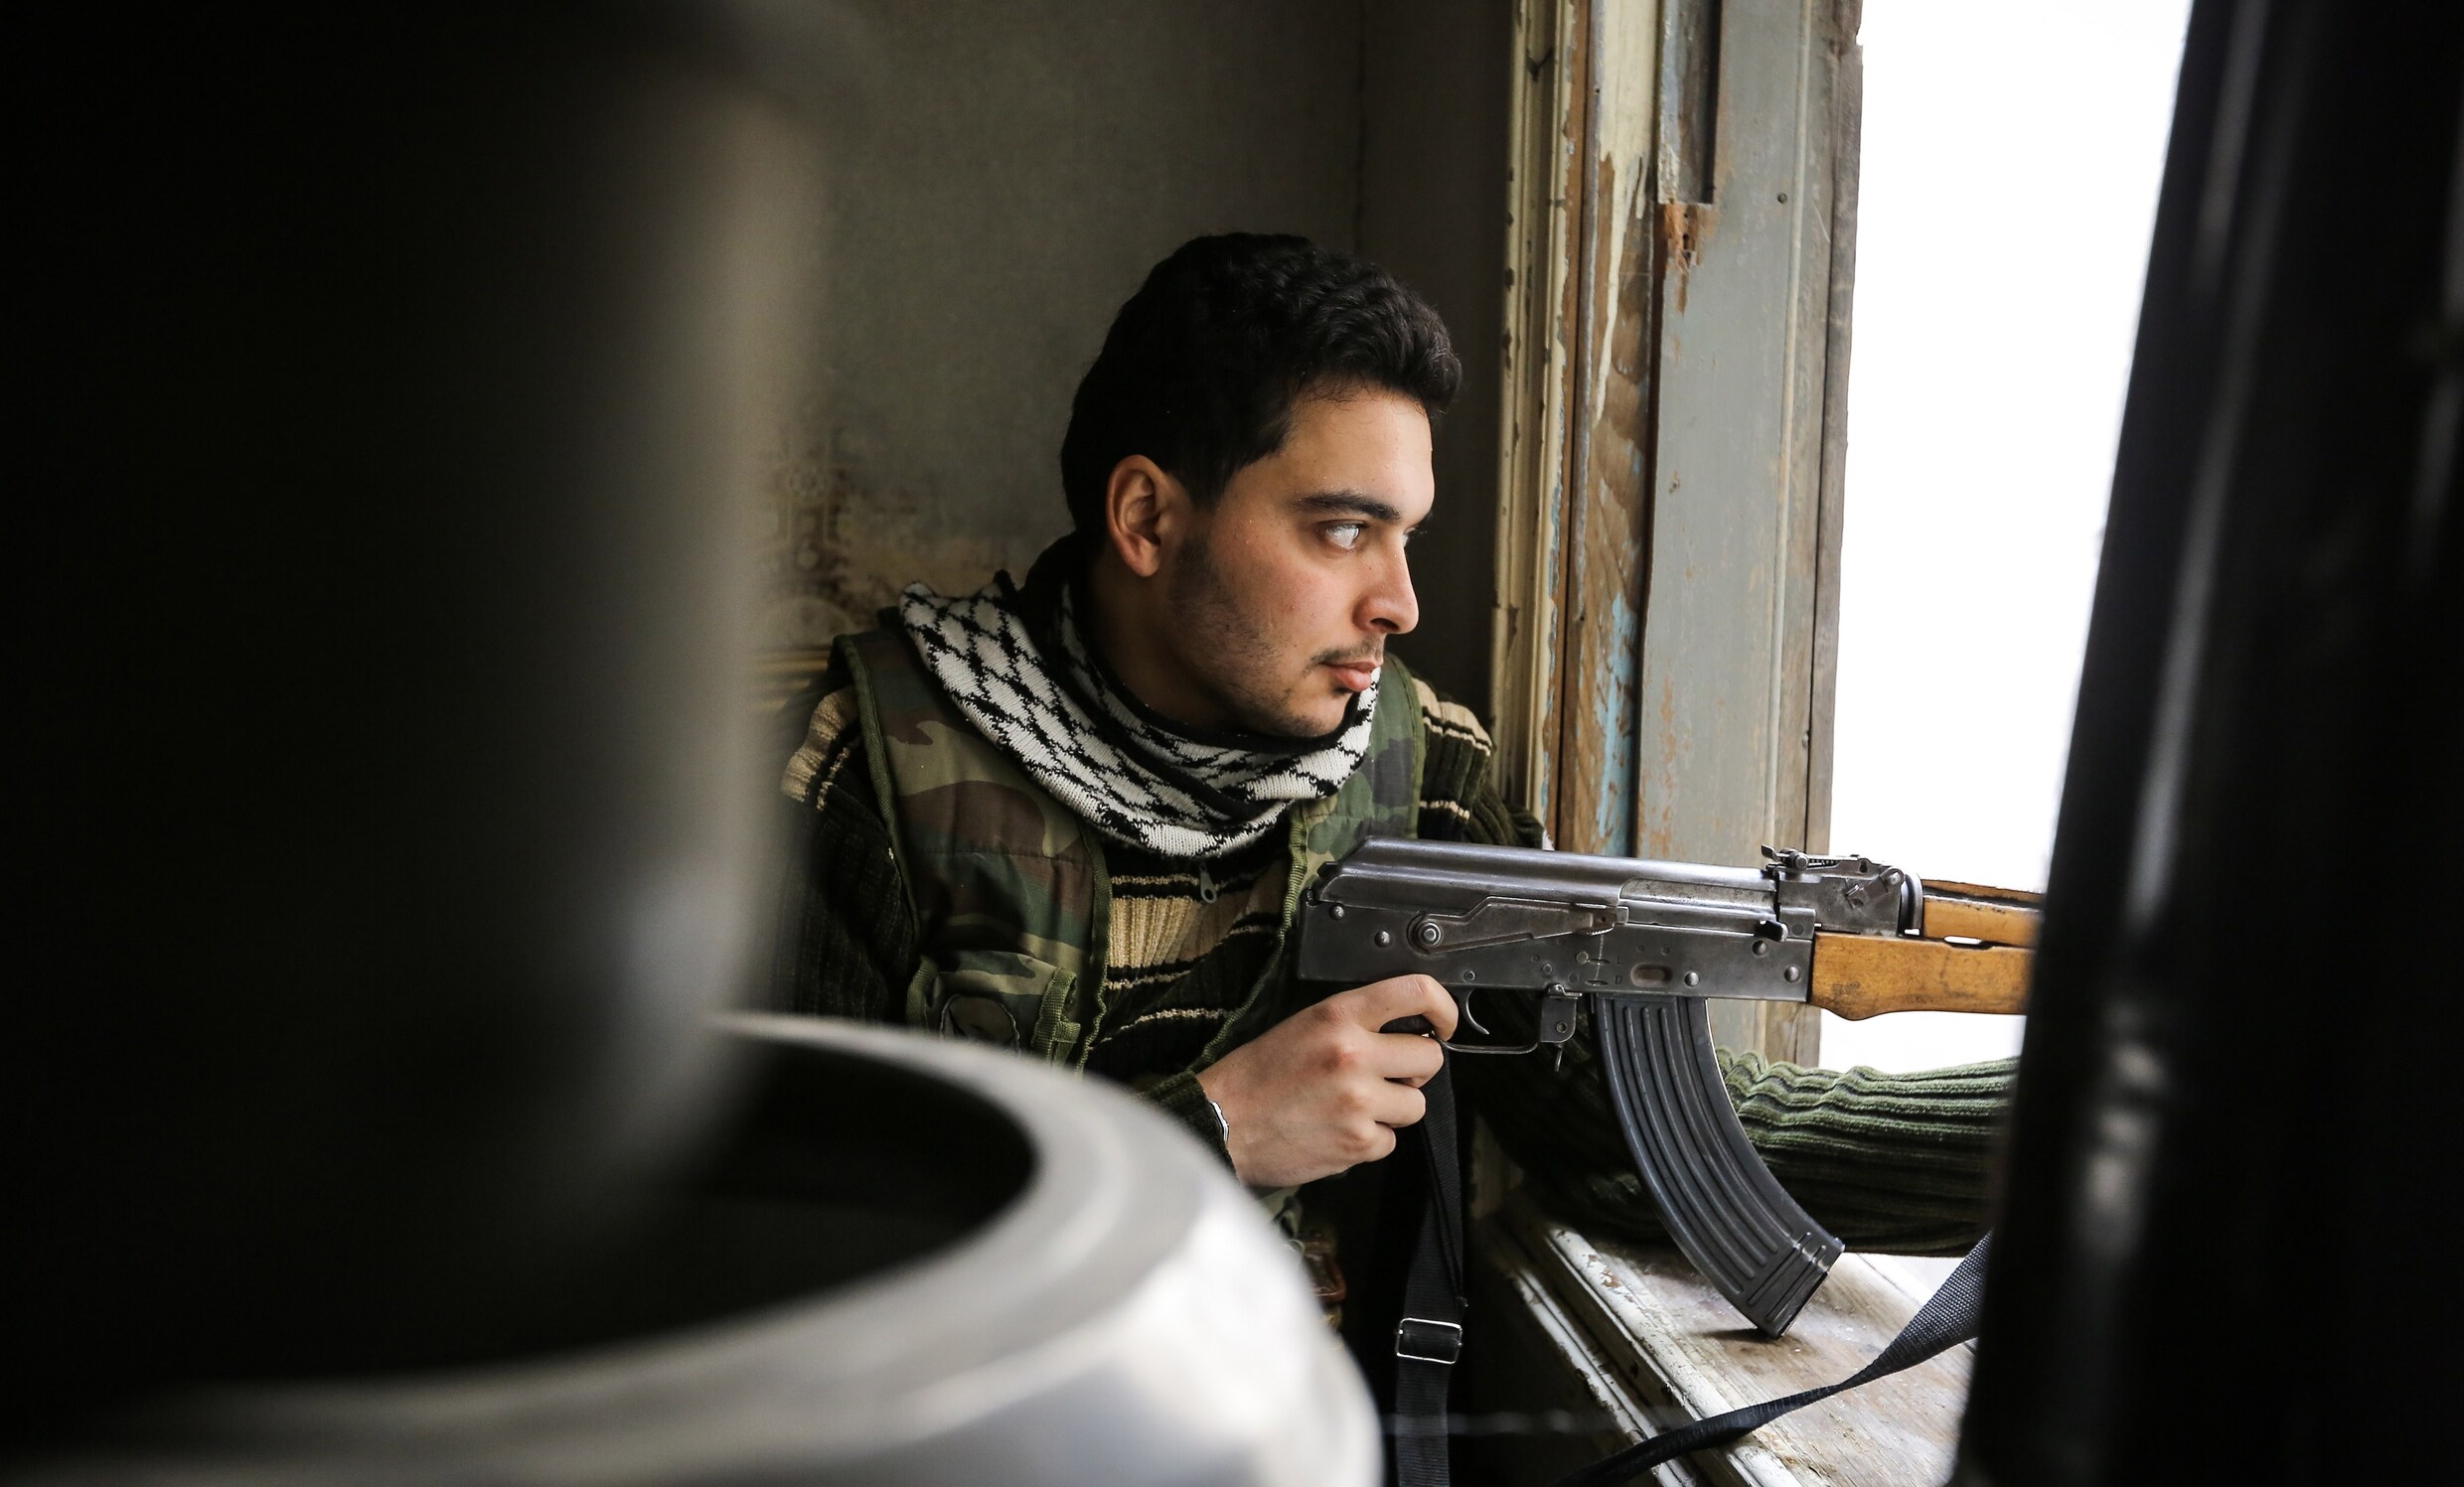 Britse journalist in videoboodschap: 'Ik ben in handen van IS'